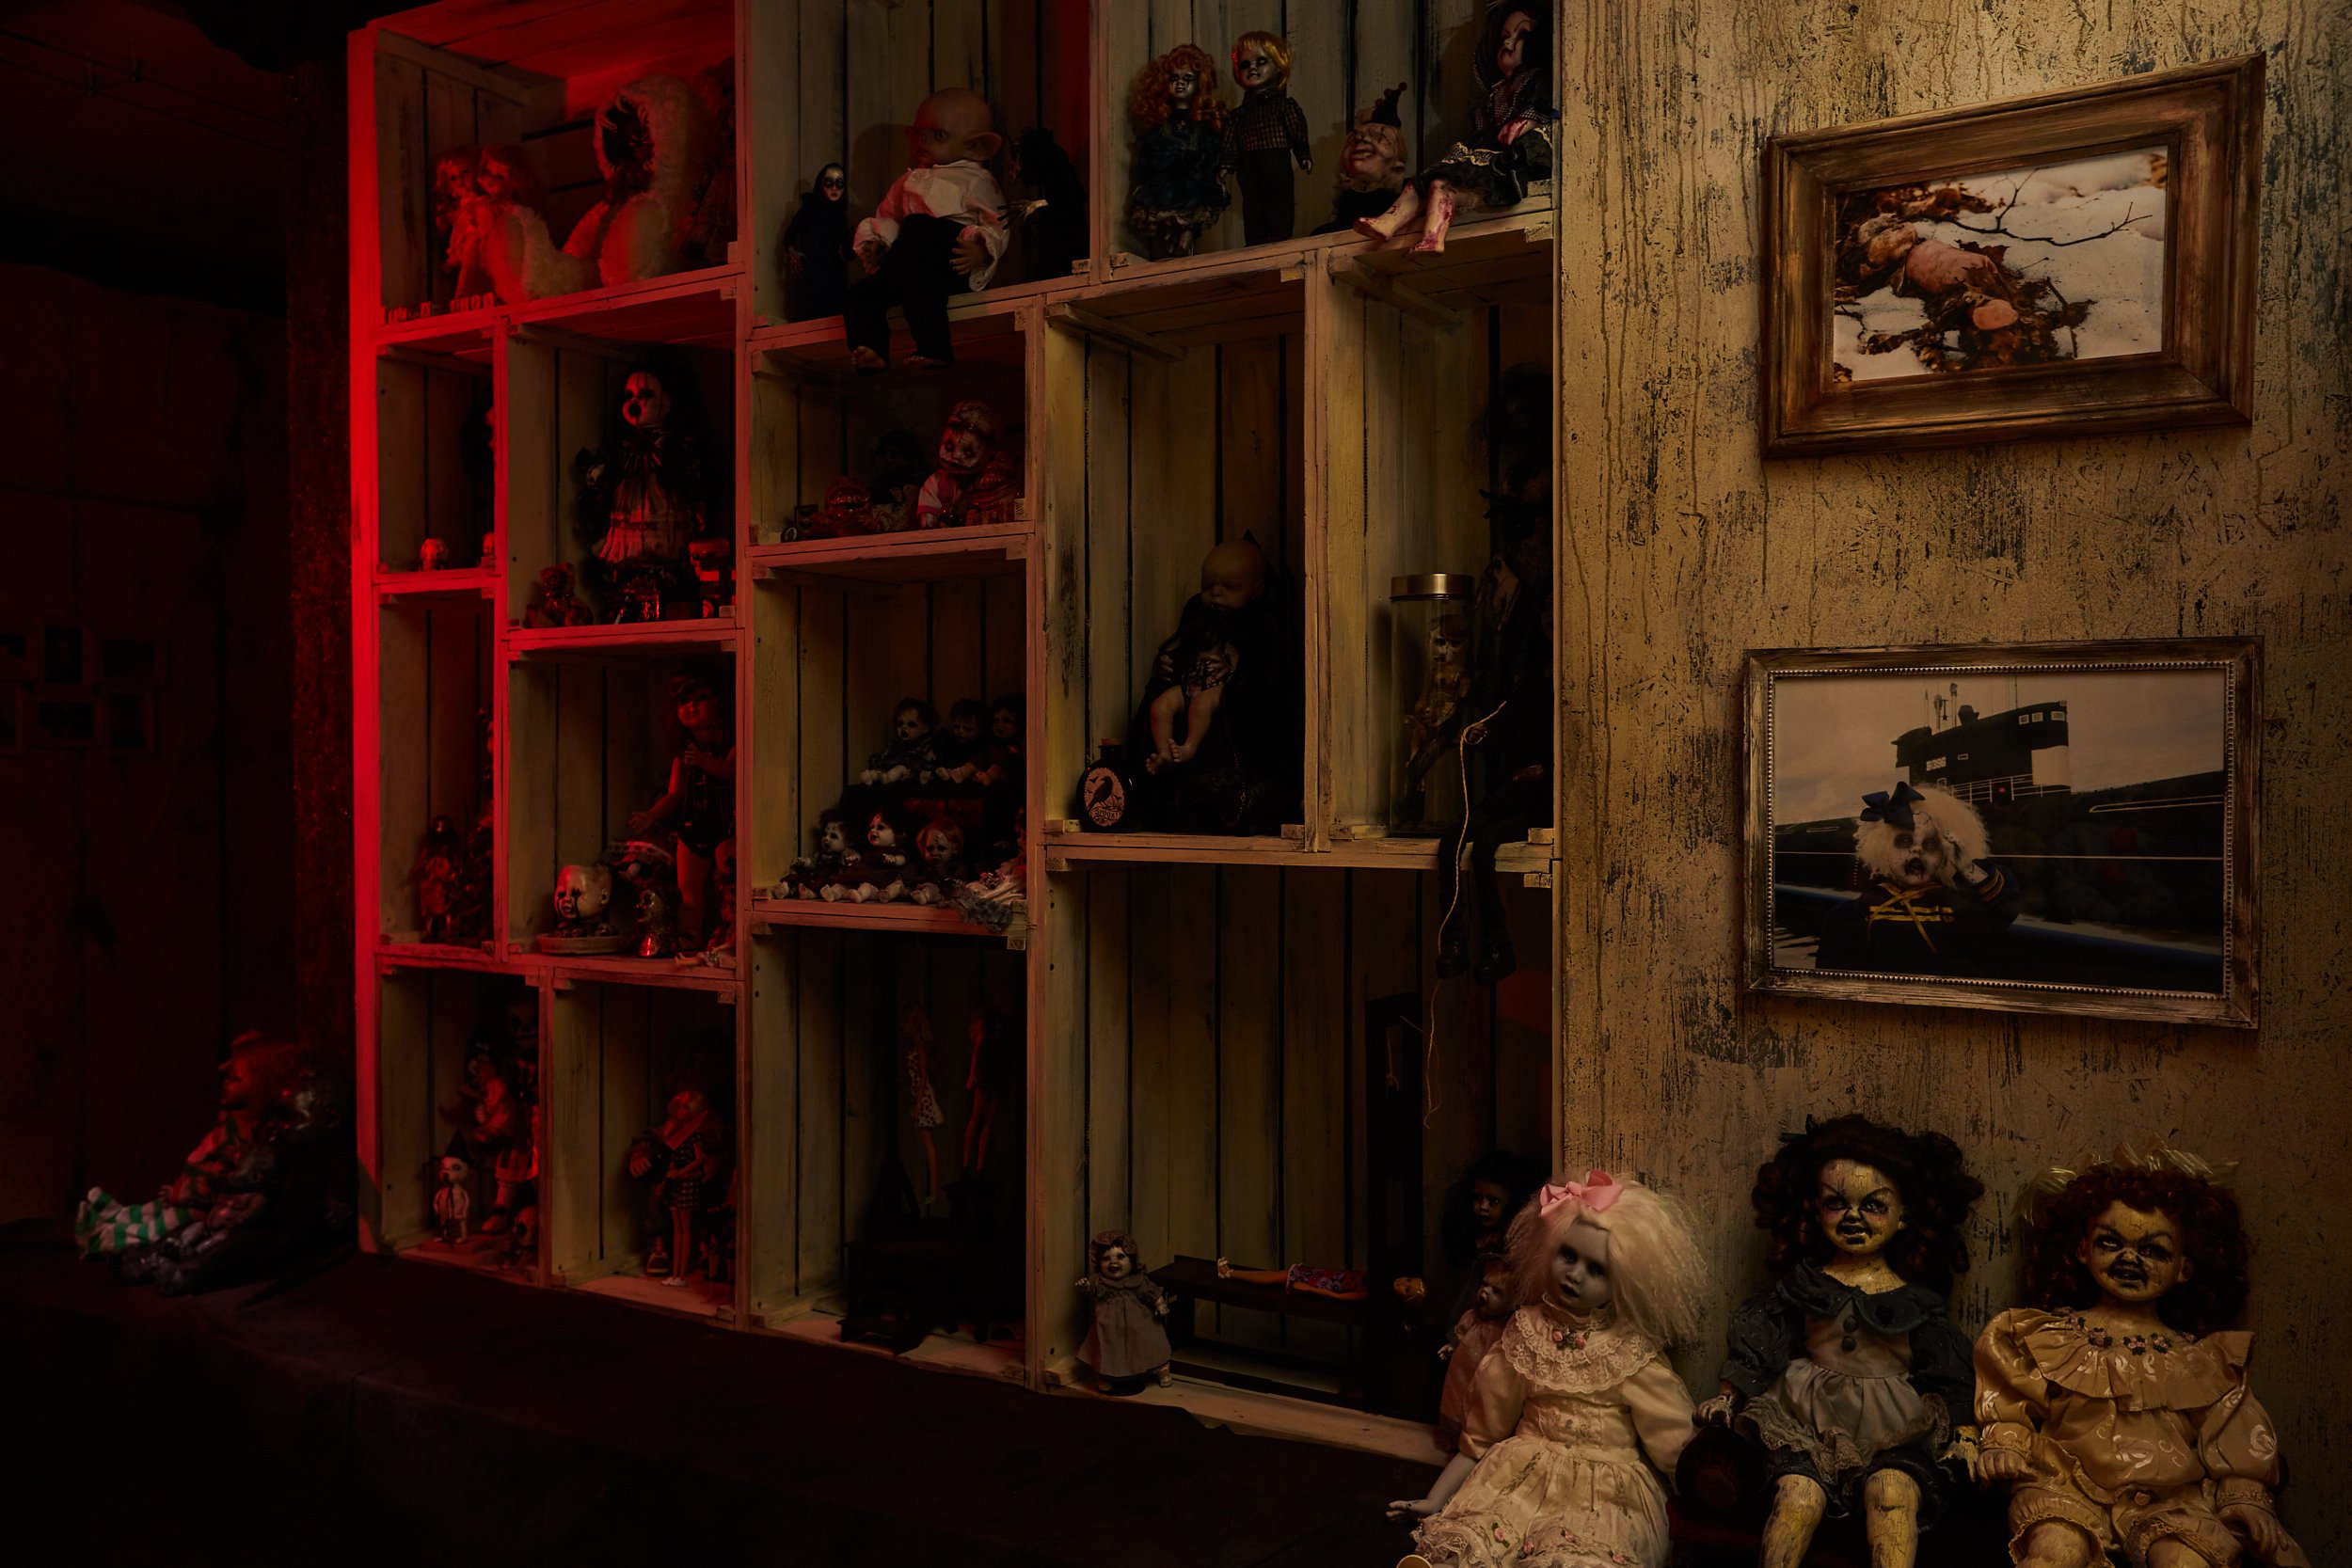 Музей мертвых кукол, улица Малая Молчановка, 8 ст2, цокольный этаж, вход через ворота с логотипом музея, из арки налево